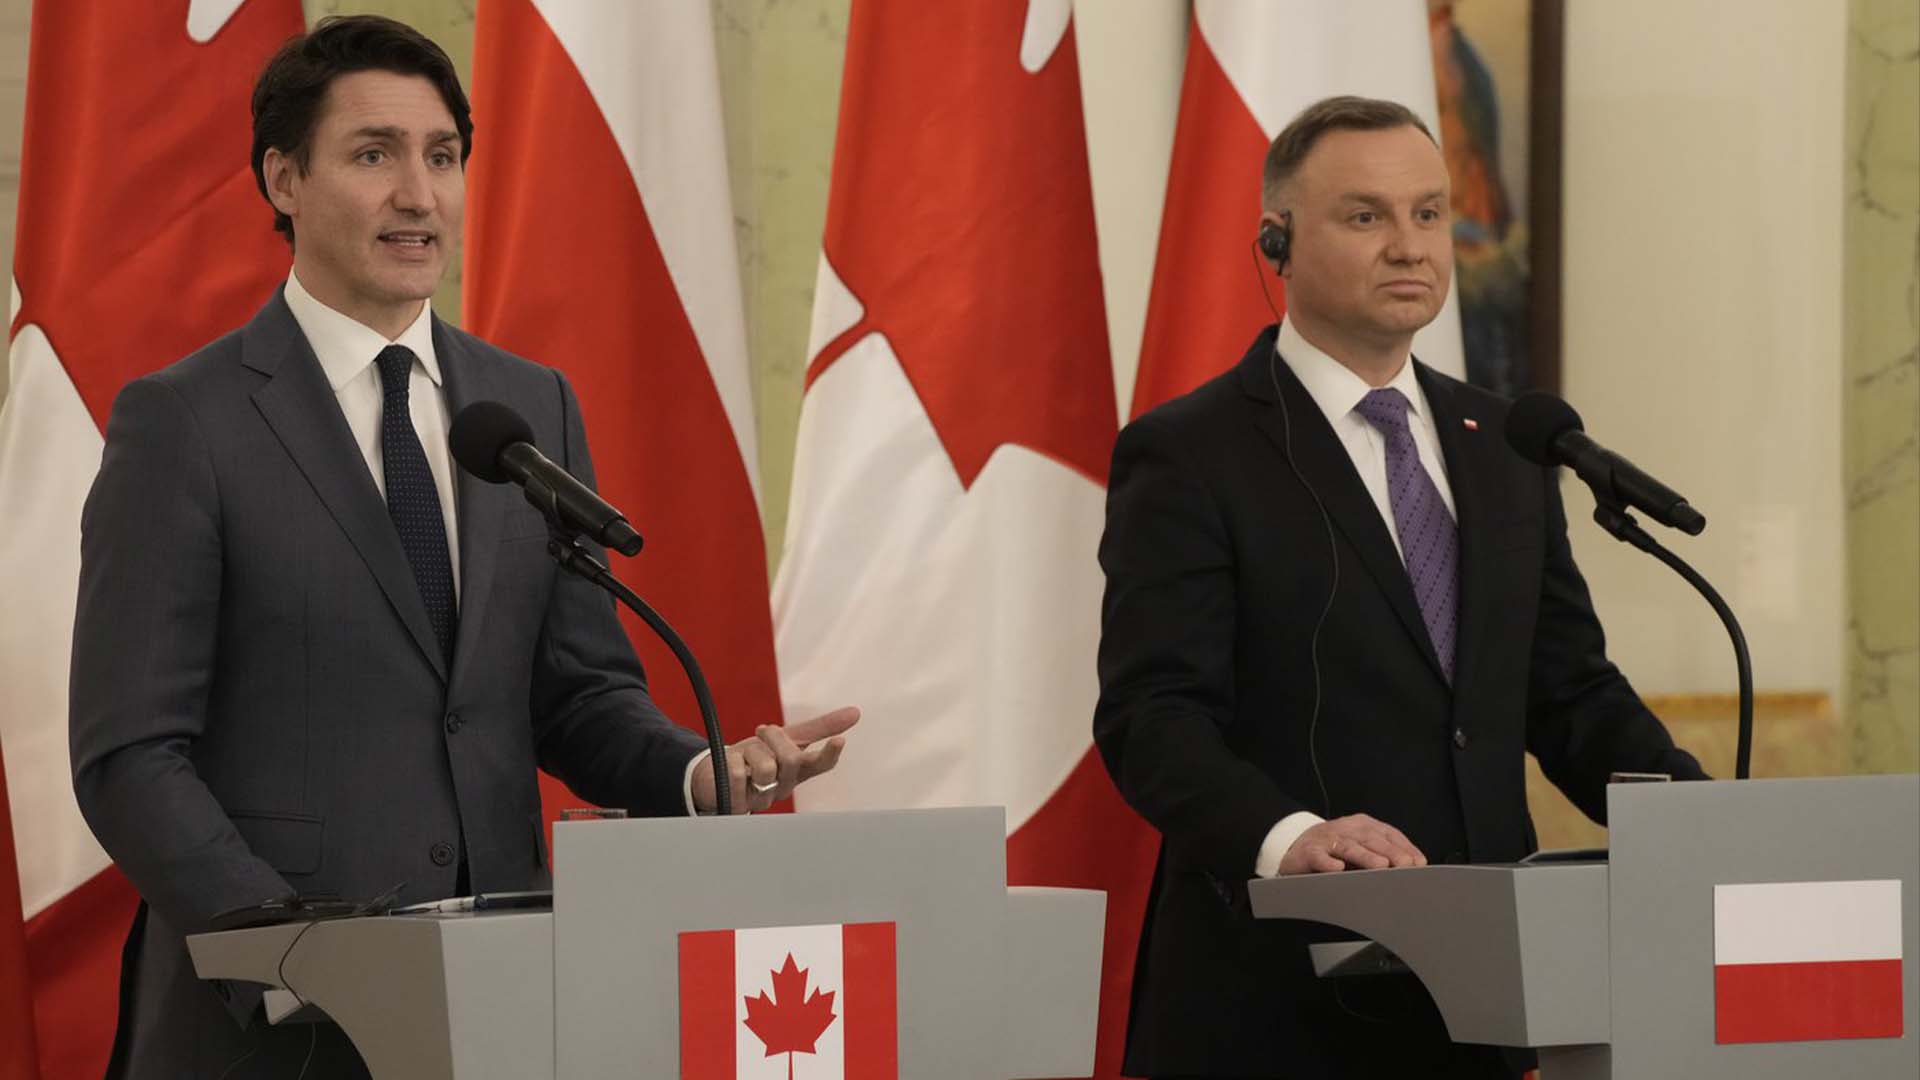 Le premier ministre du Canada, Justin Trudeau, photographié jeudi lors d'une conférence de presse conjointe avec le président de la Pologne, Andrzej Duda.